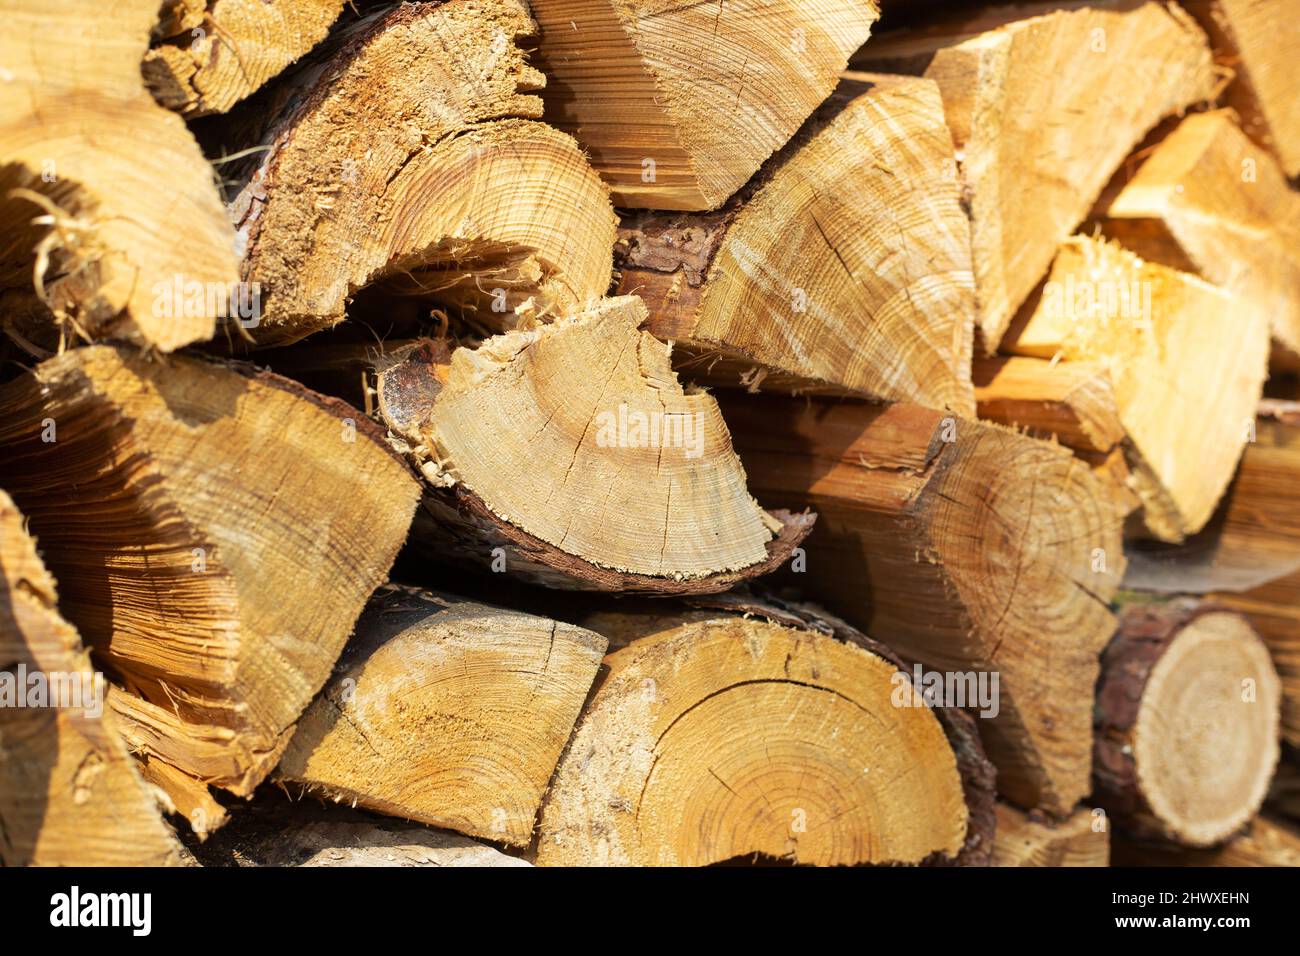 Primo piano di deposito legno tritato, legna da ardere per riscaldamento domestico Foto Stock